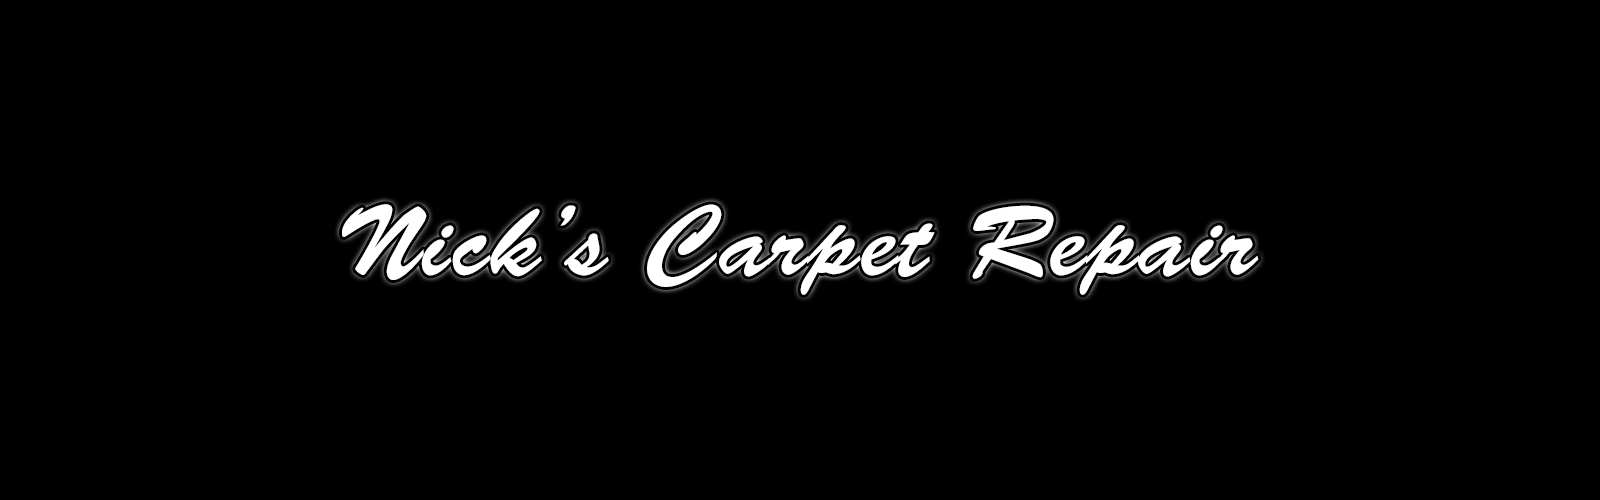 Nick's Carpet Repair